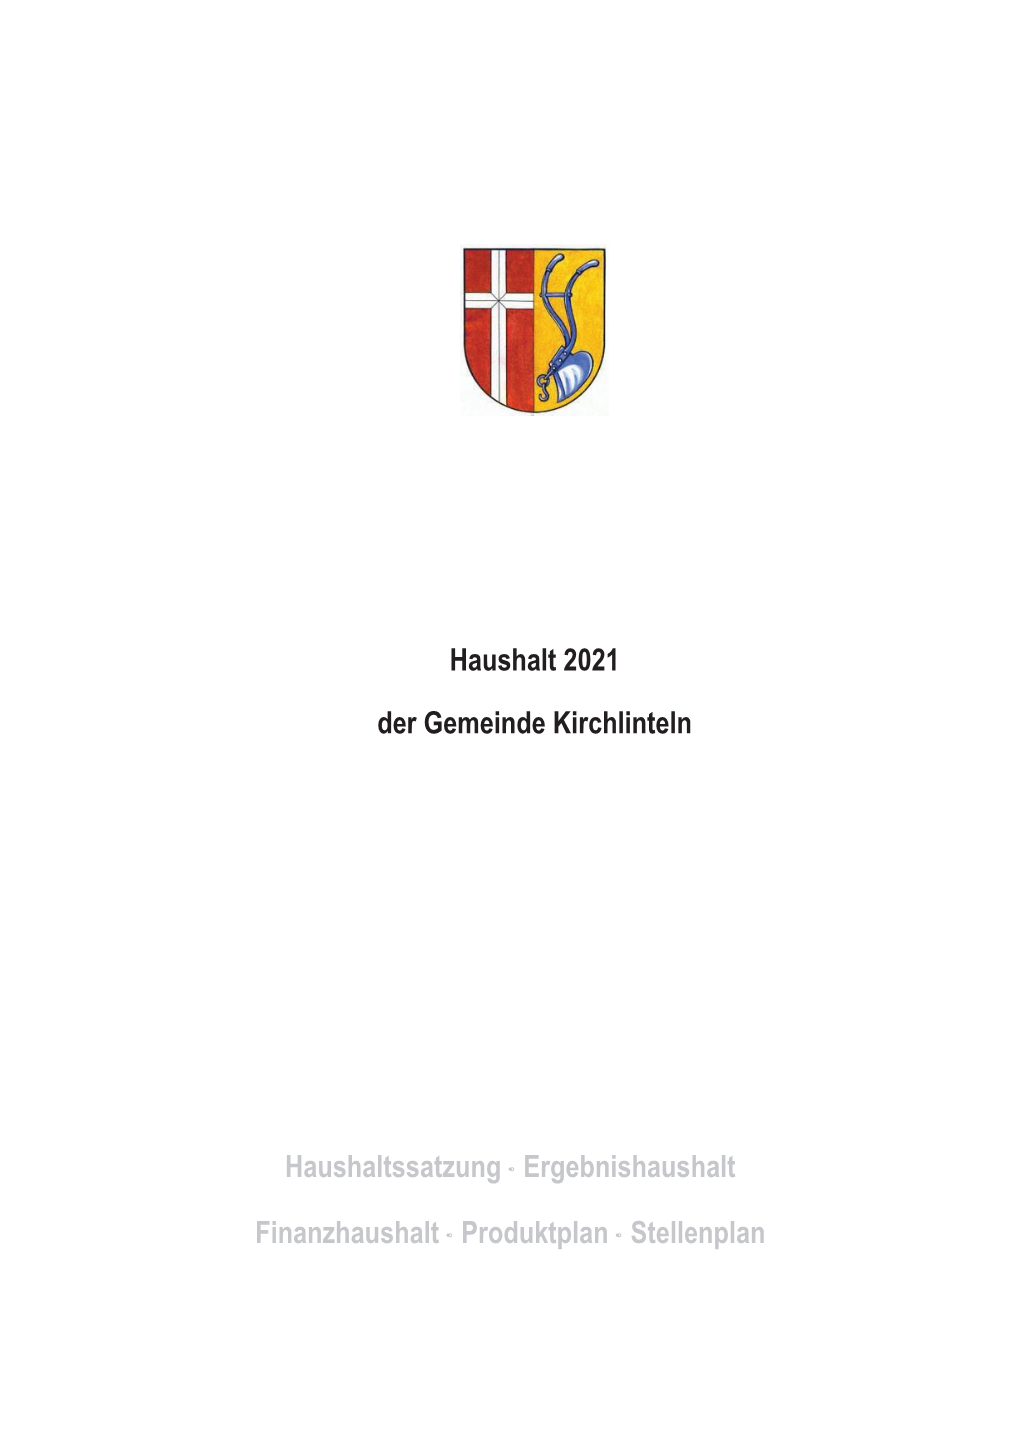 Haushalt 2021 Der Gemeinde Kirchlinteln Haushaltssatzung ∙ Ergebnishaushalt Finanzhaushalt ∙ Produktplan ∙ Stellenplan